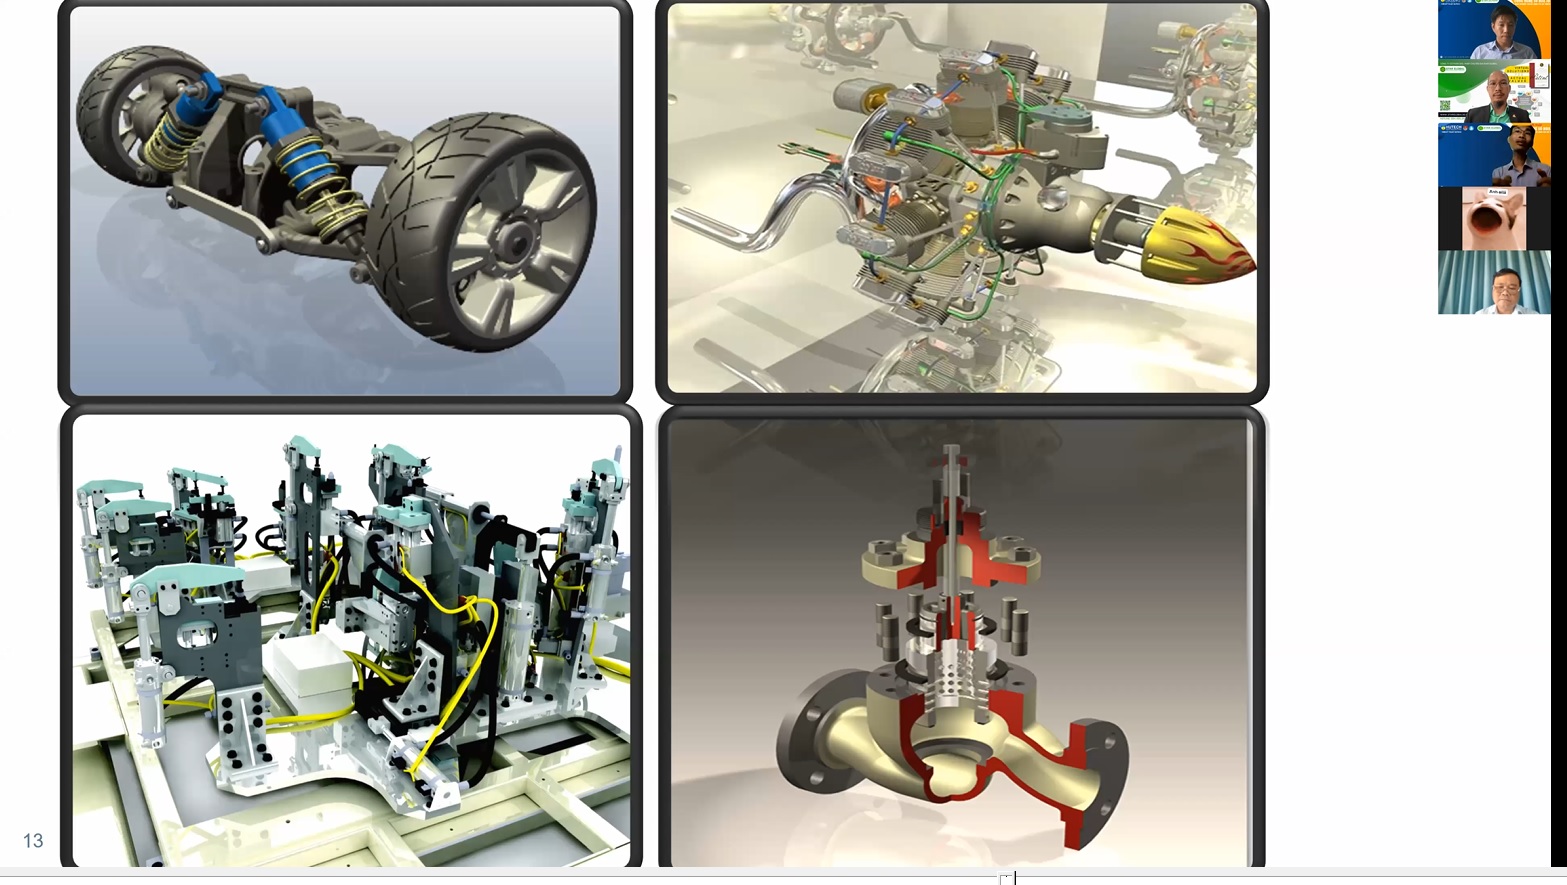 Viện kỹ thuật HUTECH cùng doanh nghiệp tổ chức hội thảo chủ đề “Công nghệ số hoá 3D, khởi nghiệp trong lĩnh vực kỹ thuật” 119